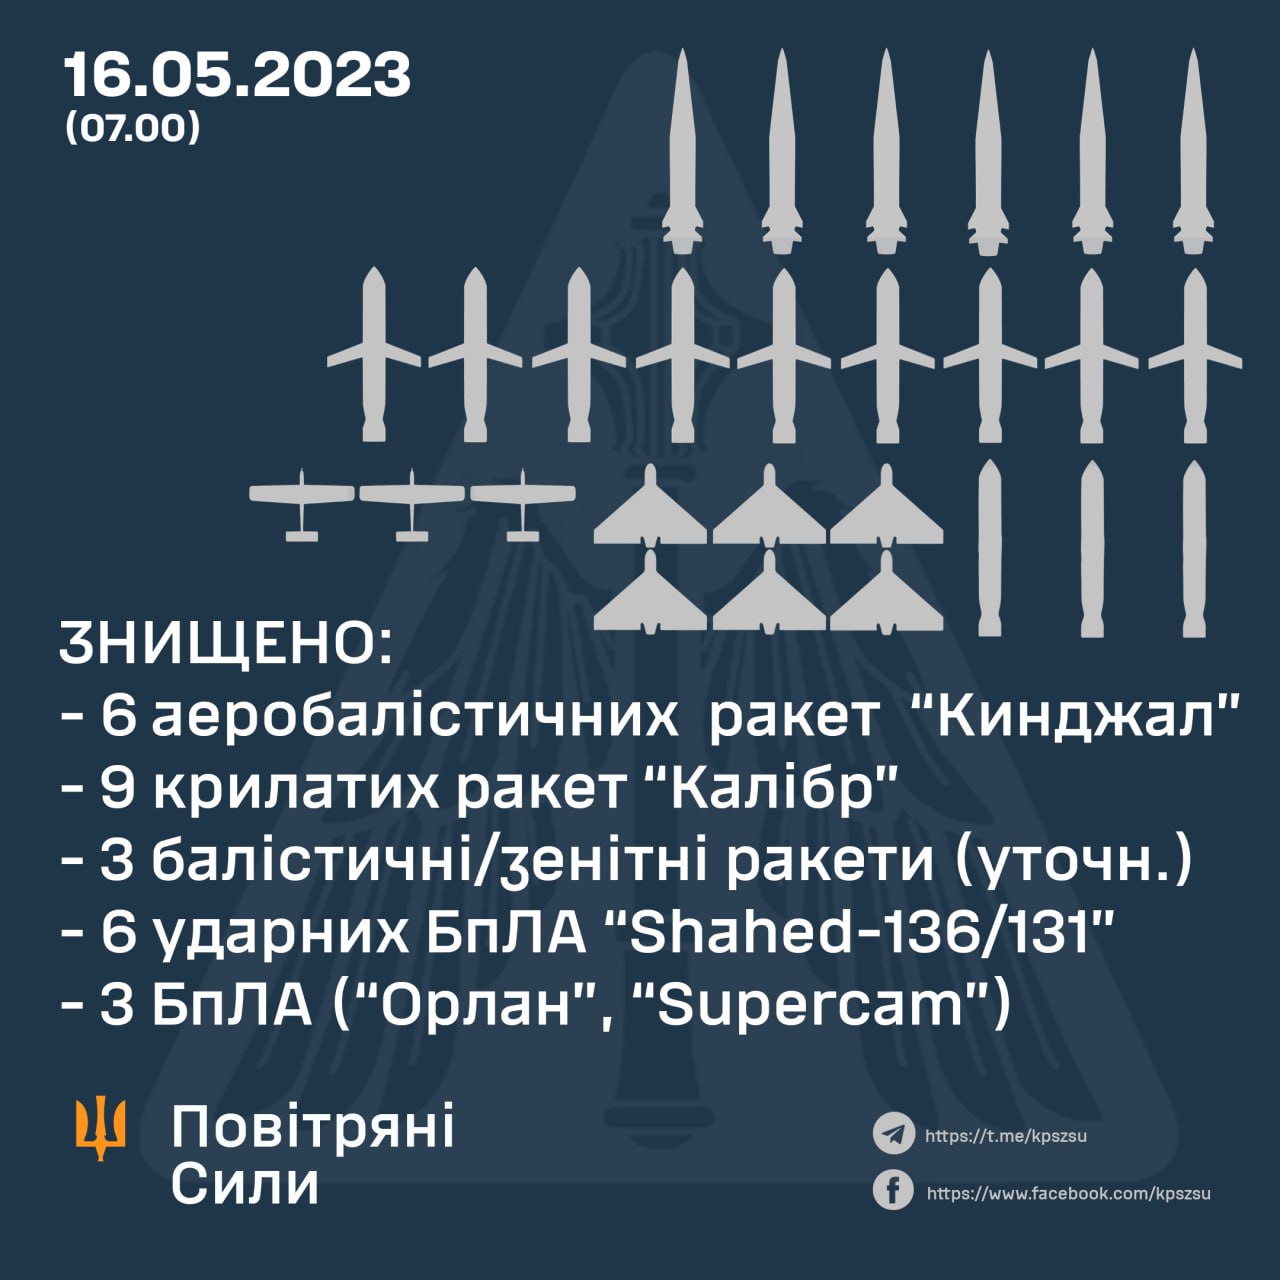 16 мая россияне атаковали Украину ударными дронами типа Shahed